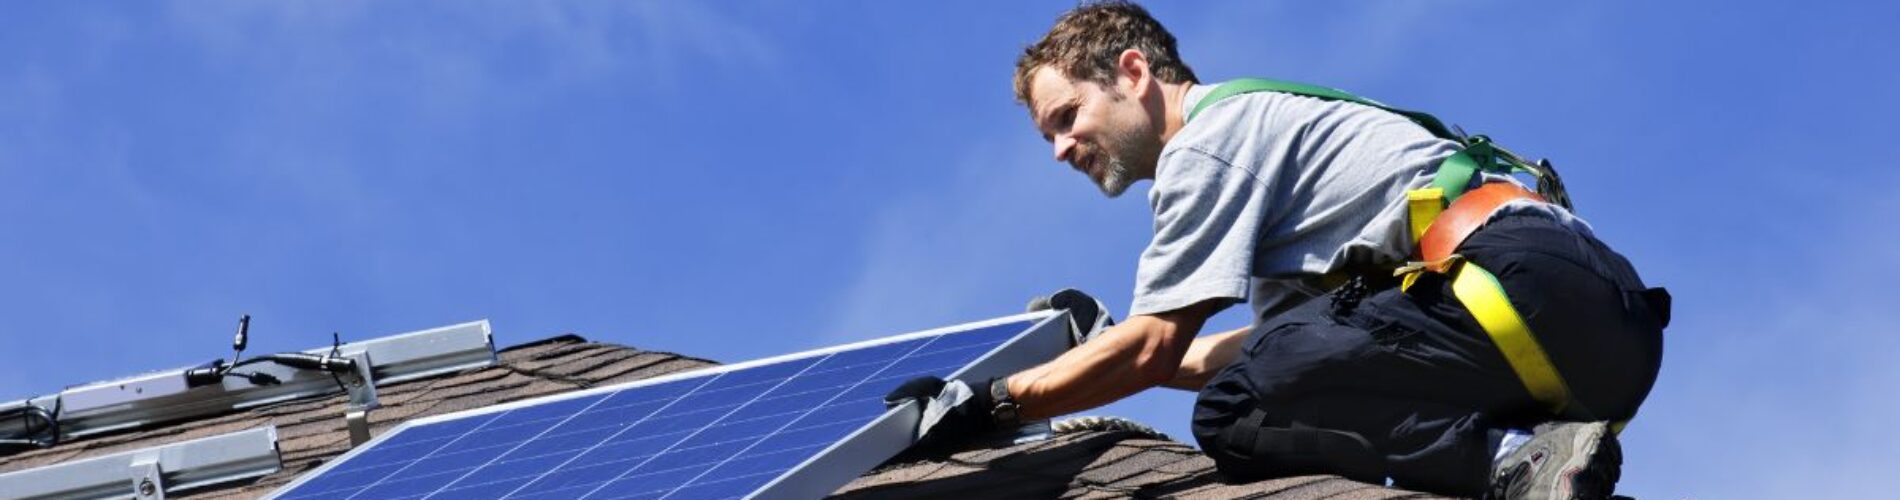 安装太阳能交流电池板